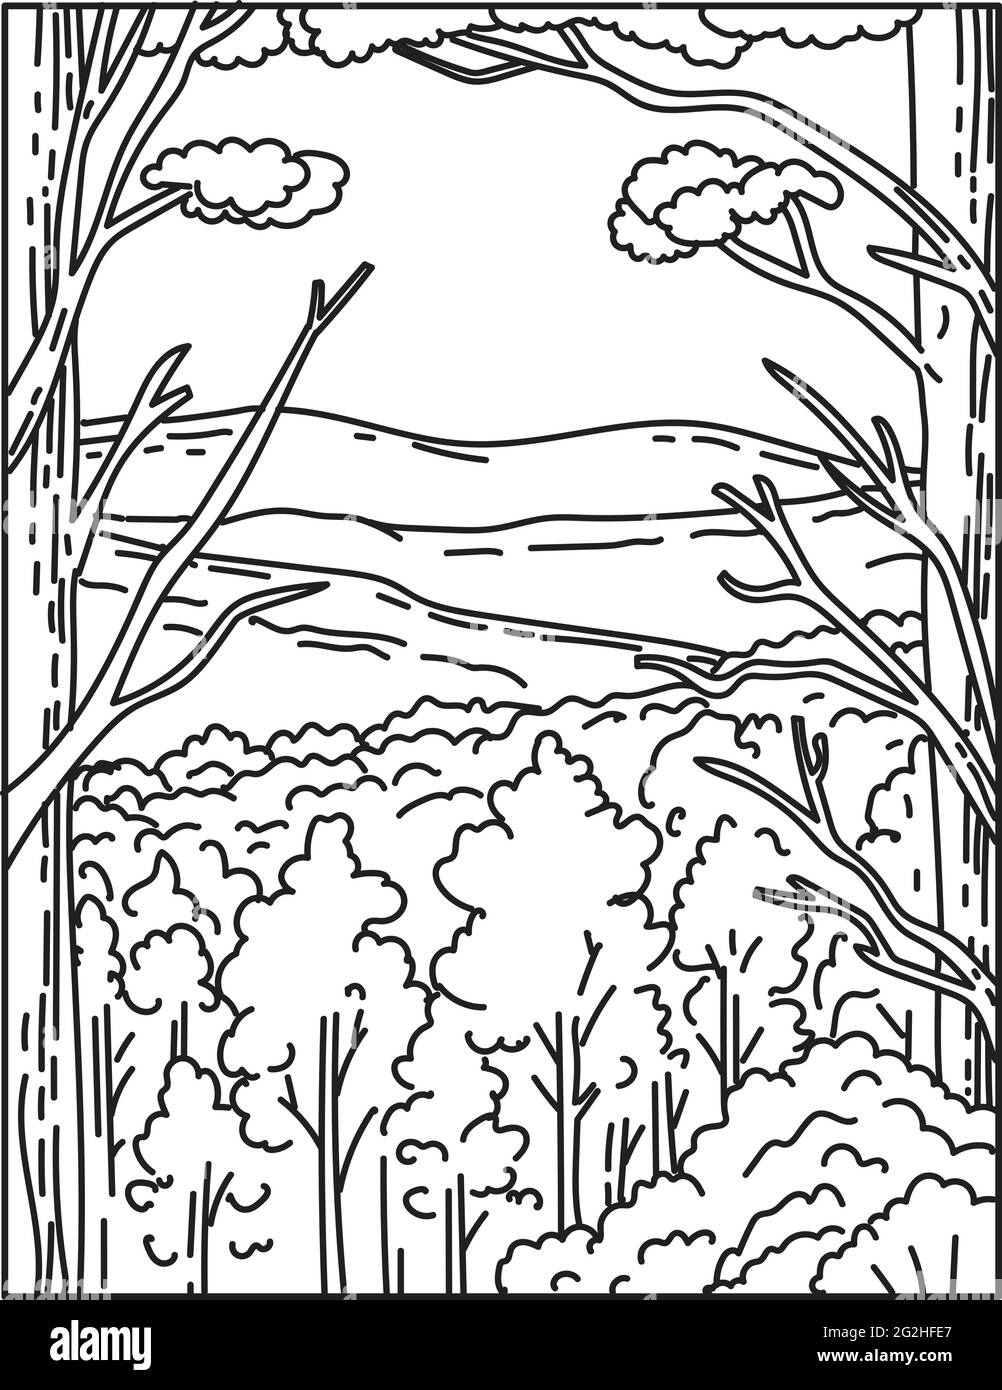 Illustrazione monolinea della catena montuosa di Ouachita o Ouachitas situata nel Parco Nazionale di Hot Springs, Arkansas, Stati Uniti d'America fatto in retrò Illustrazione Vettoriale